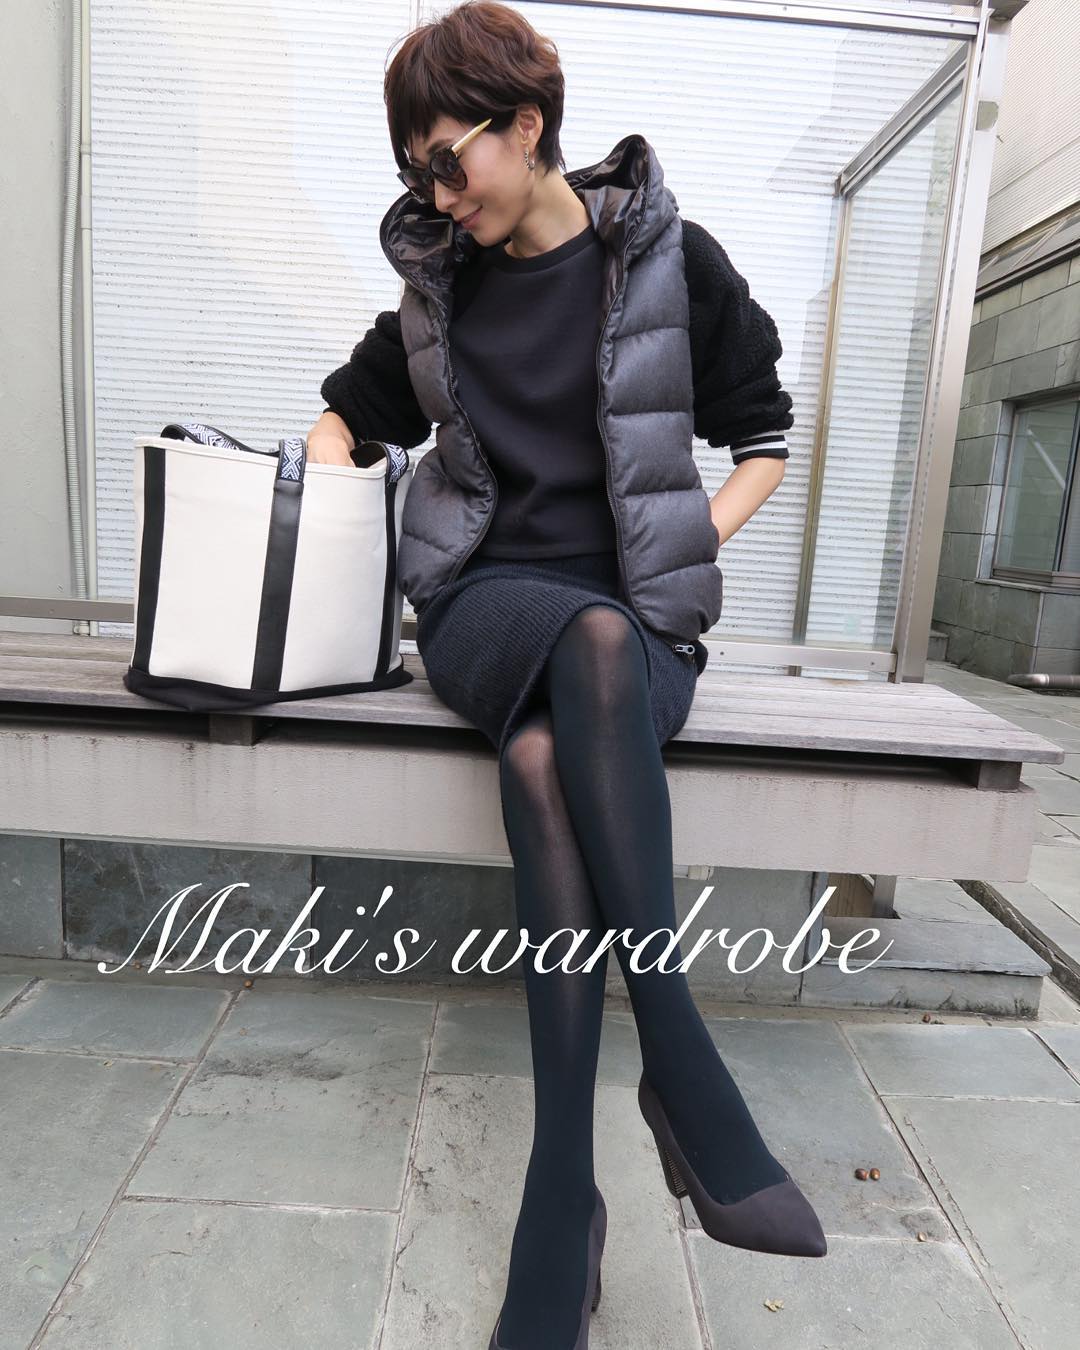 田丸麻紀 Maki S Wardrobe Outfit 私服 Makiswardrobe Wacoca Japan People Life Style